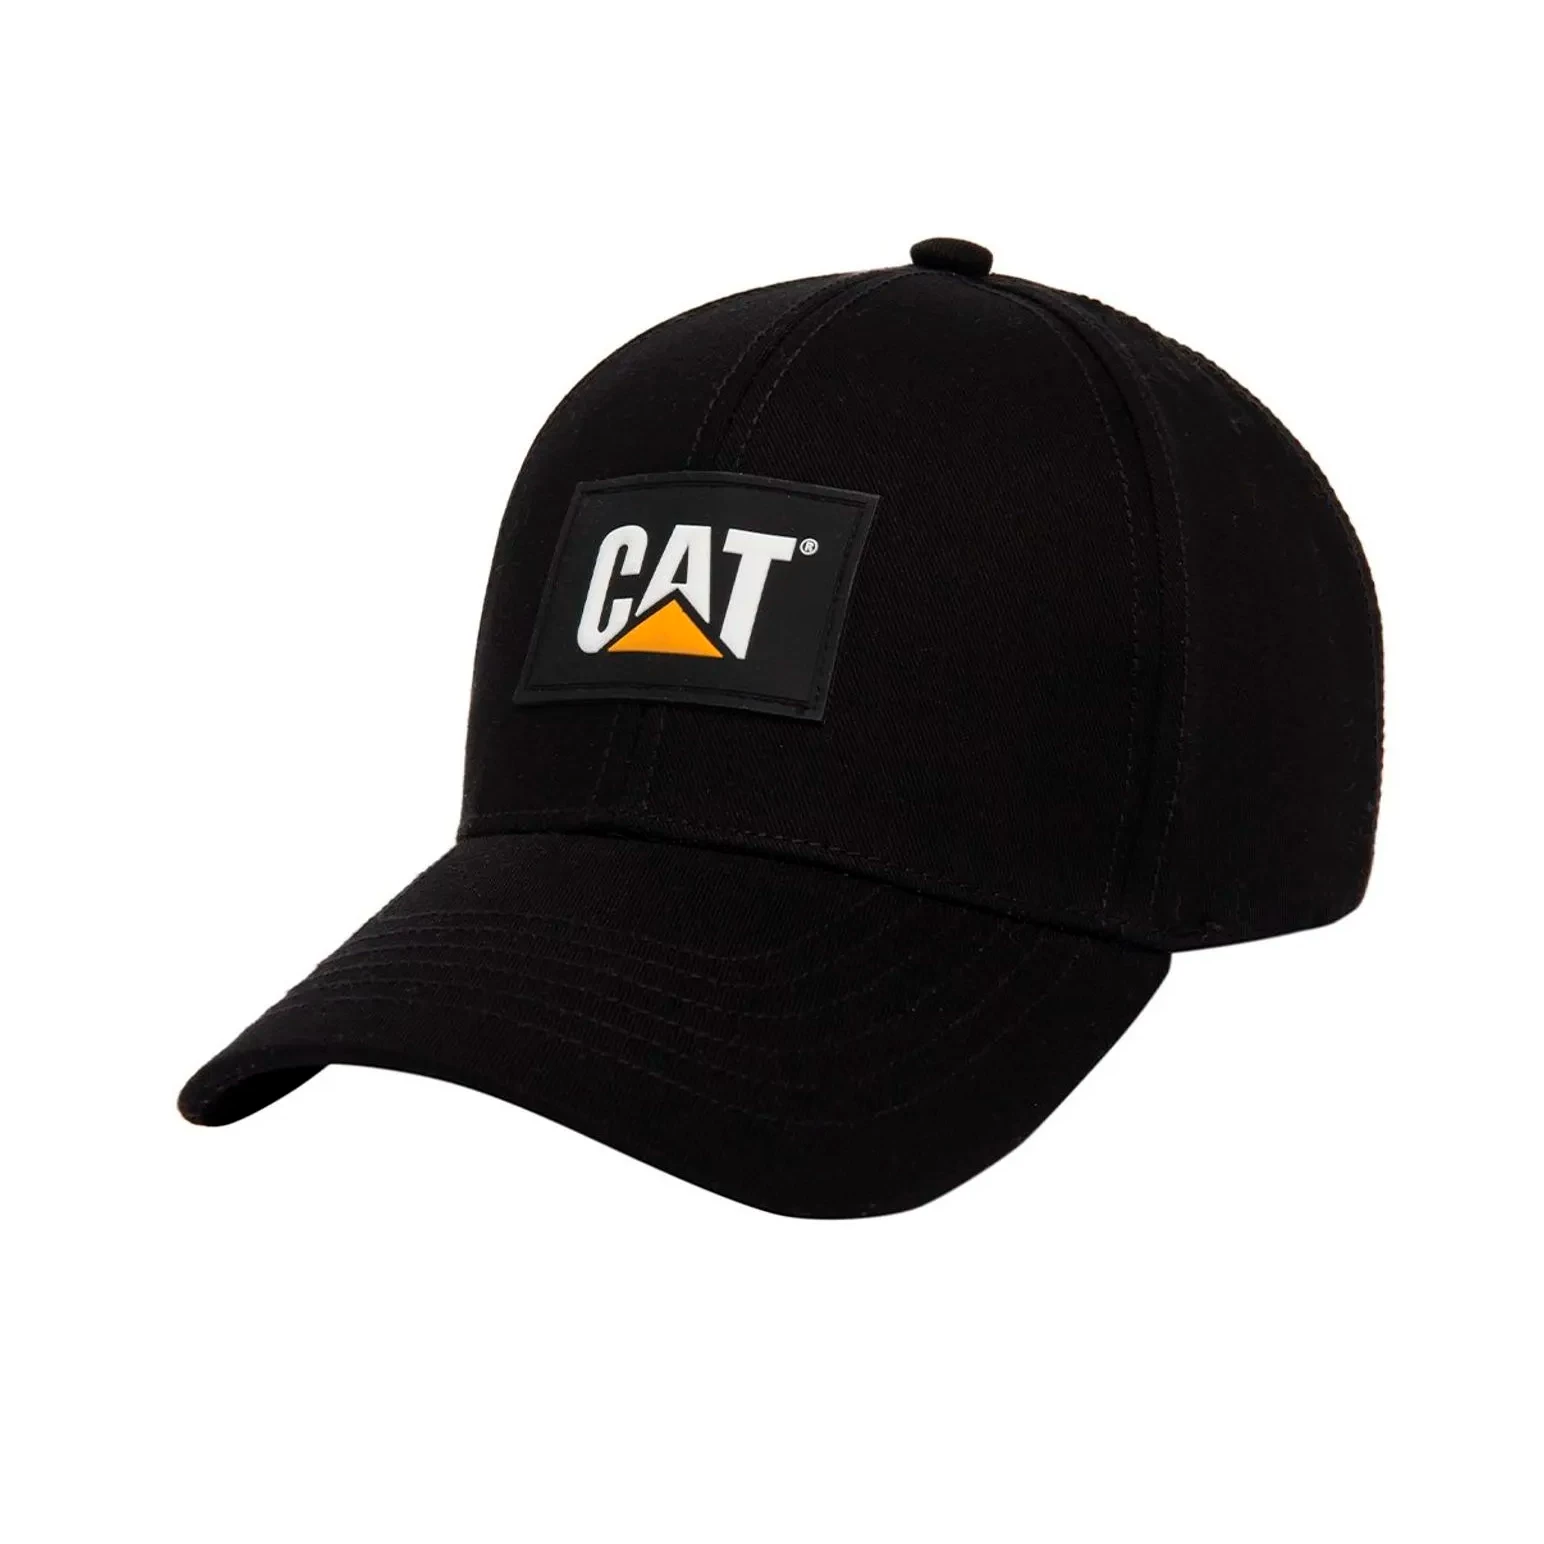 quepis-caterpillar-cat-patch-hat-2120358-10121